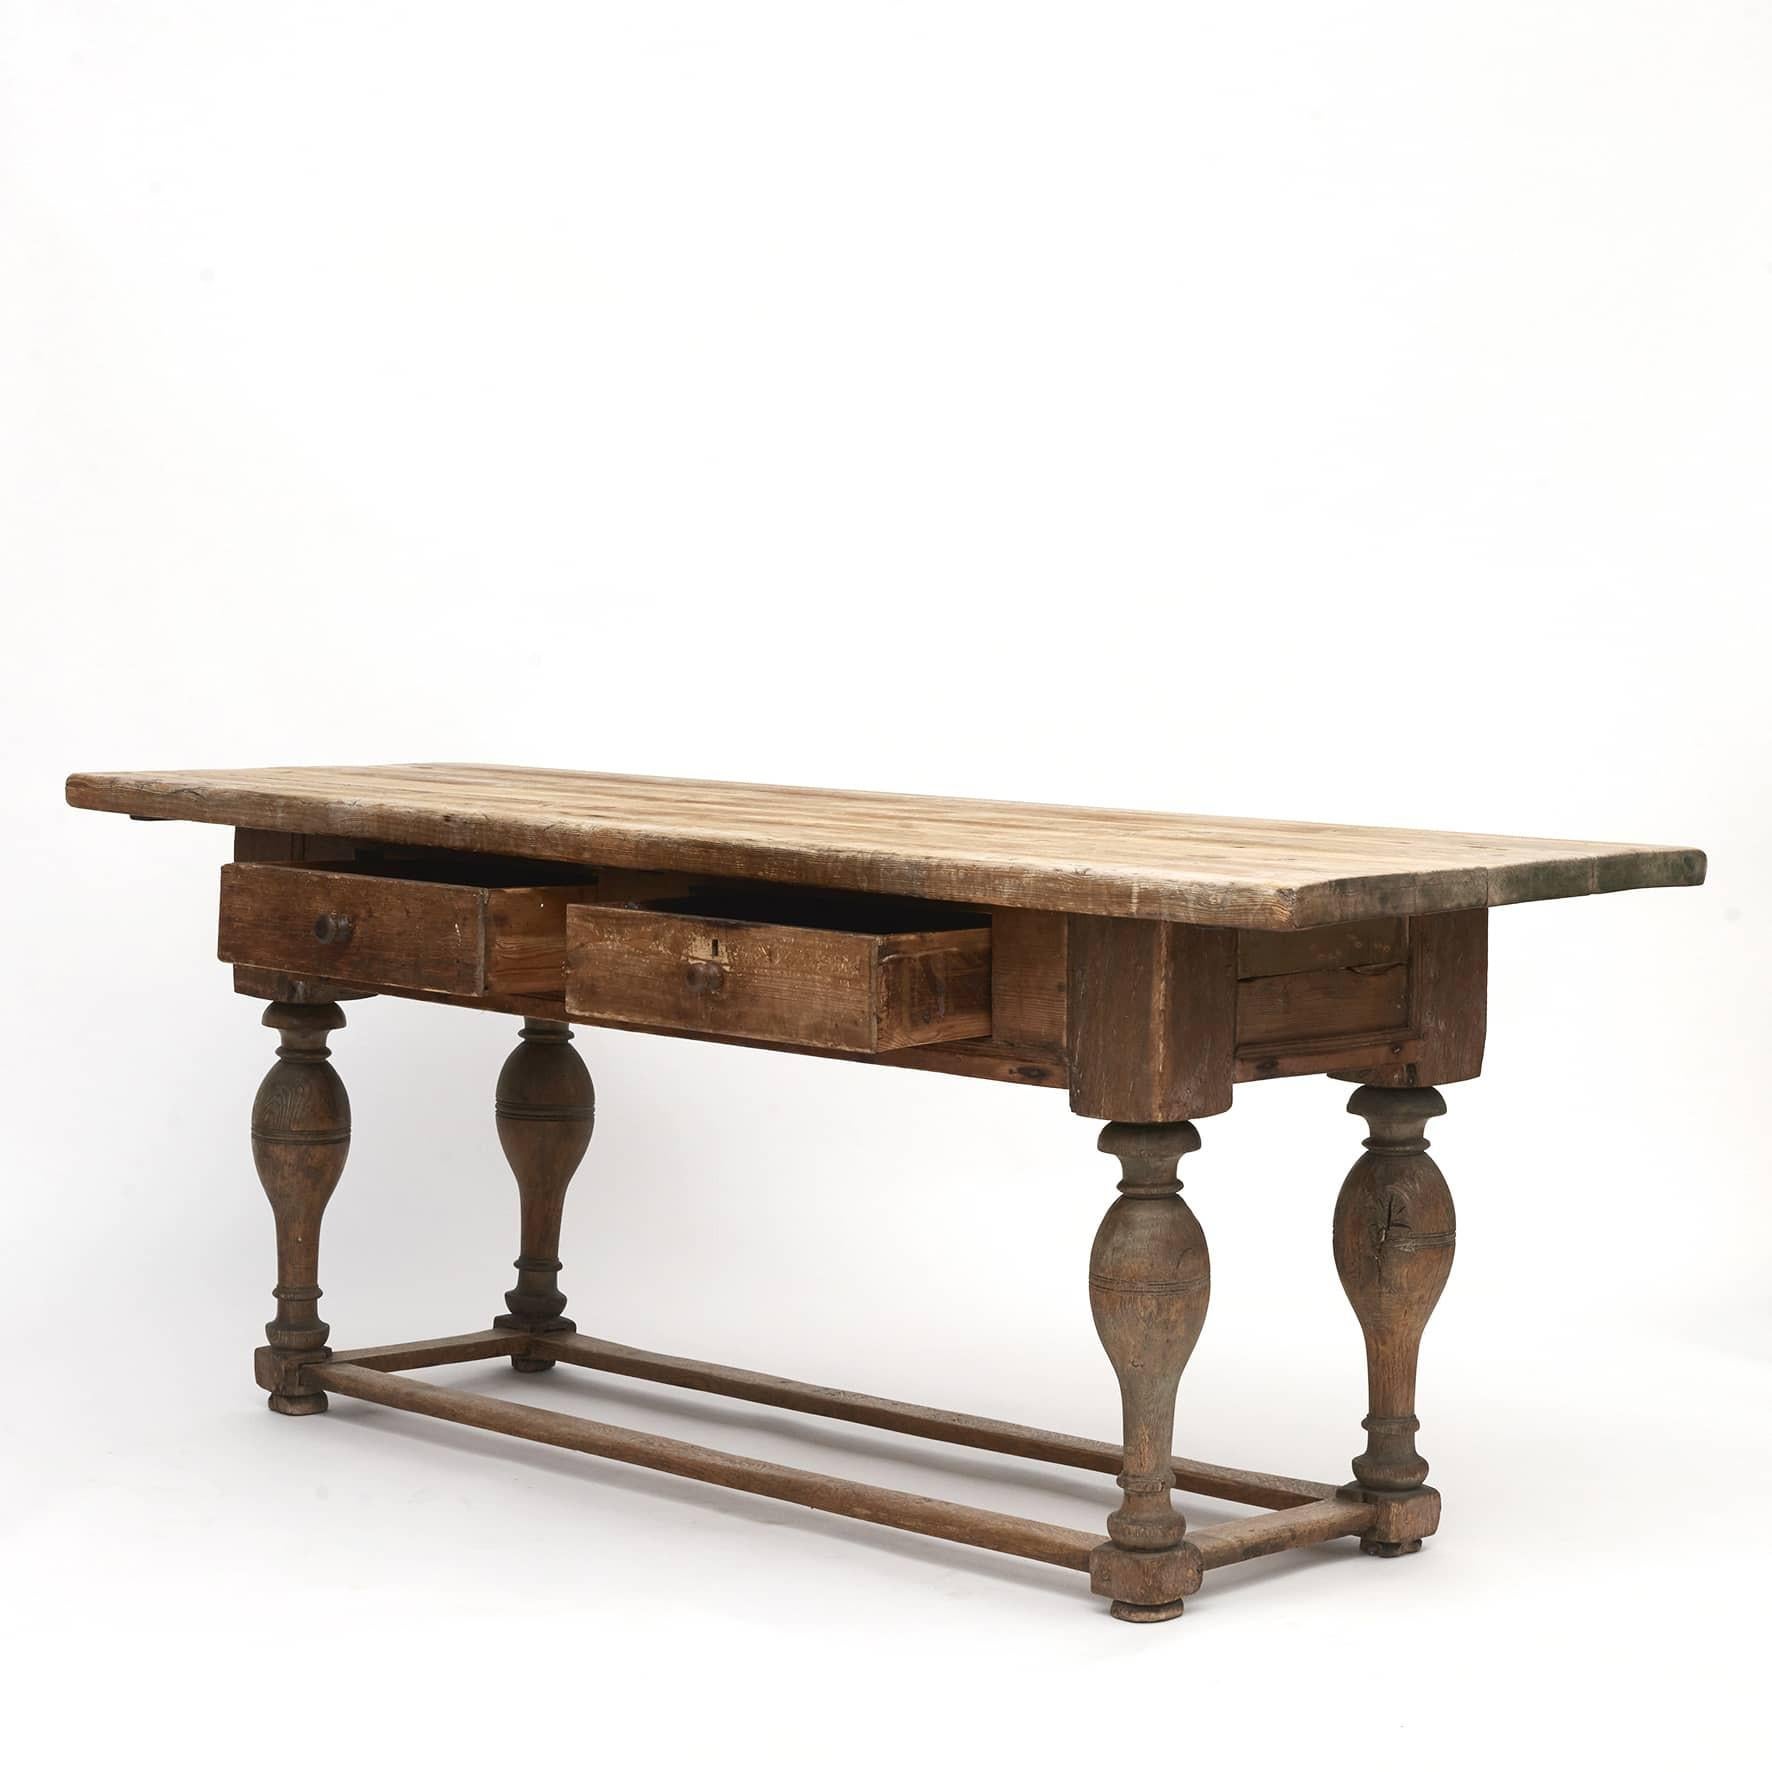 Table baroque danoise vers 1750.
Plateau, tablier et tiroirs en pin. Pieds en chêne avec une base en caisson.
Style brut avec une bonne expression.

Etat original.